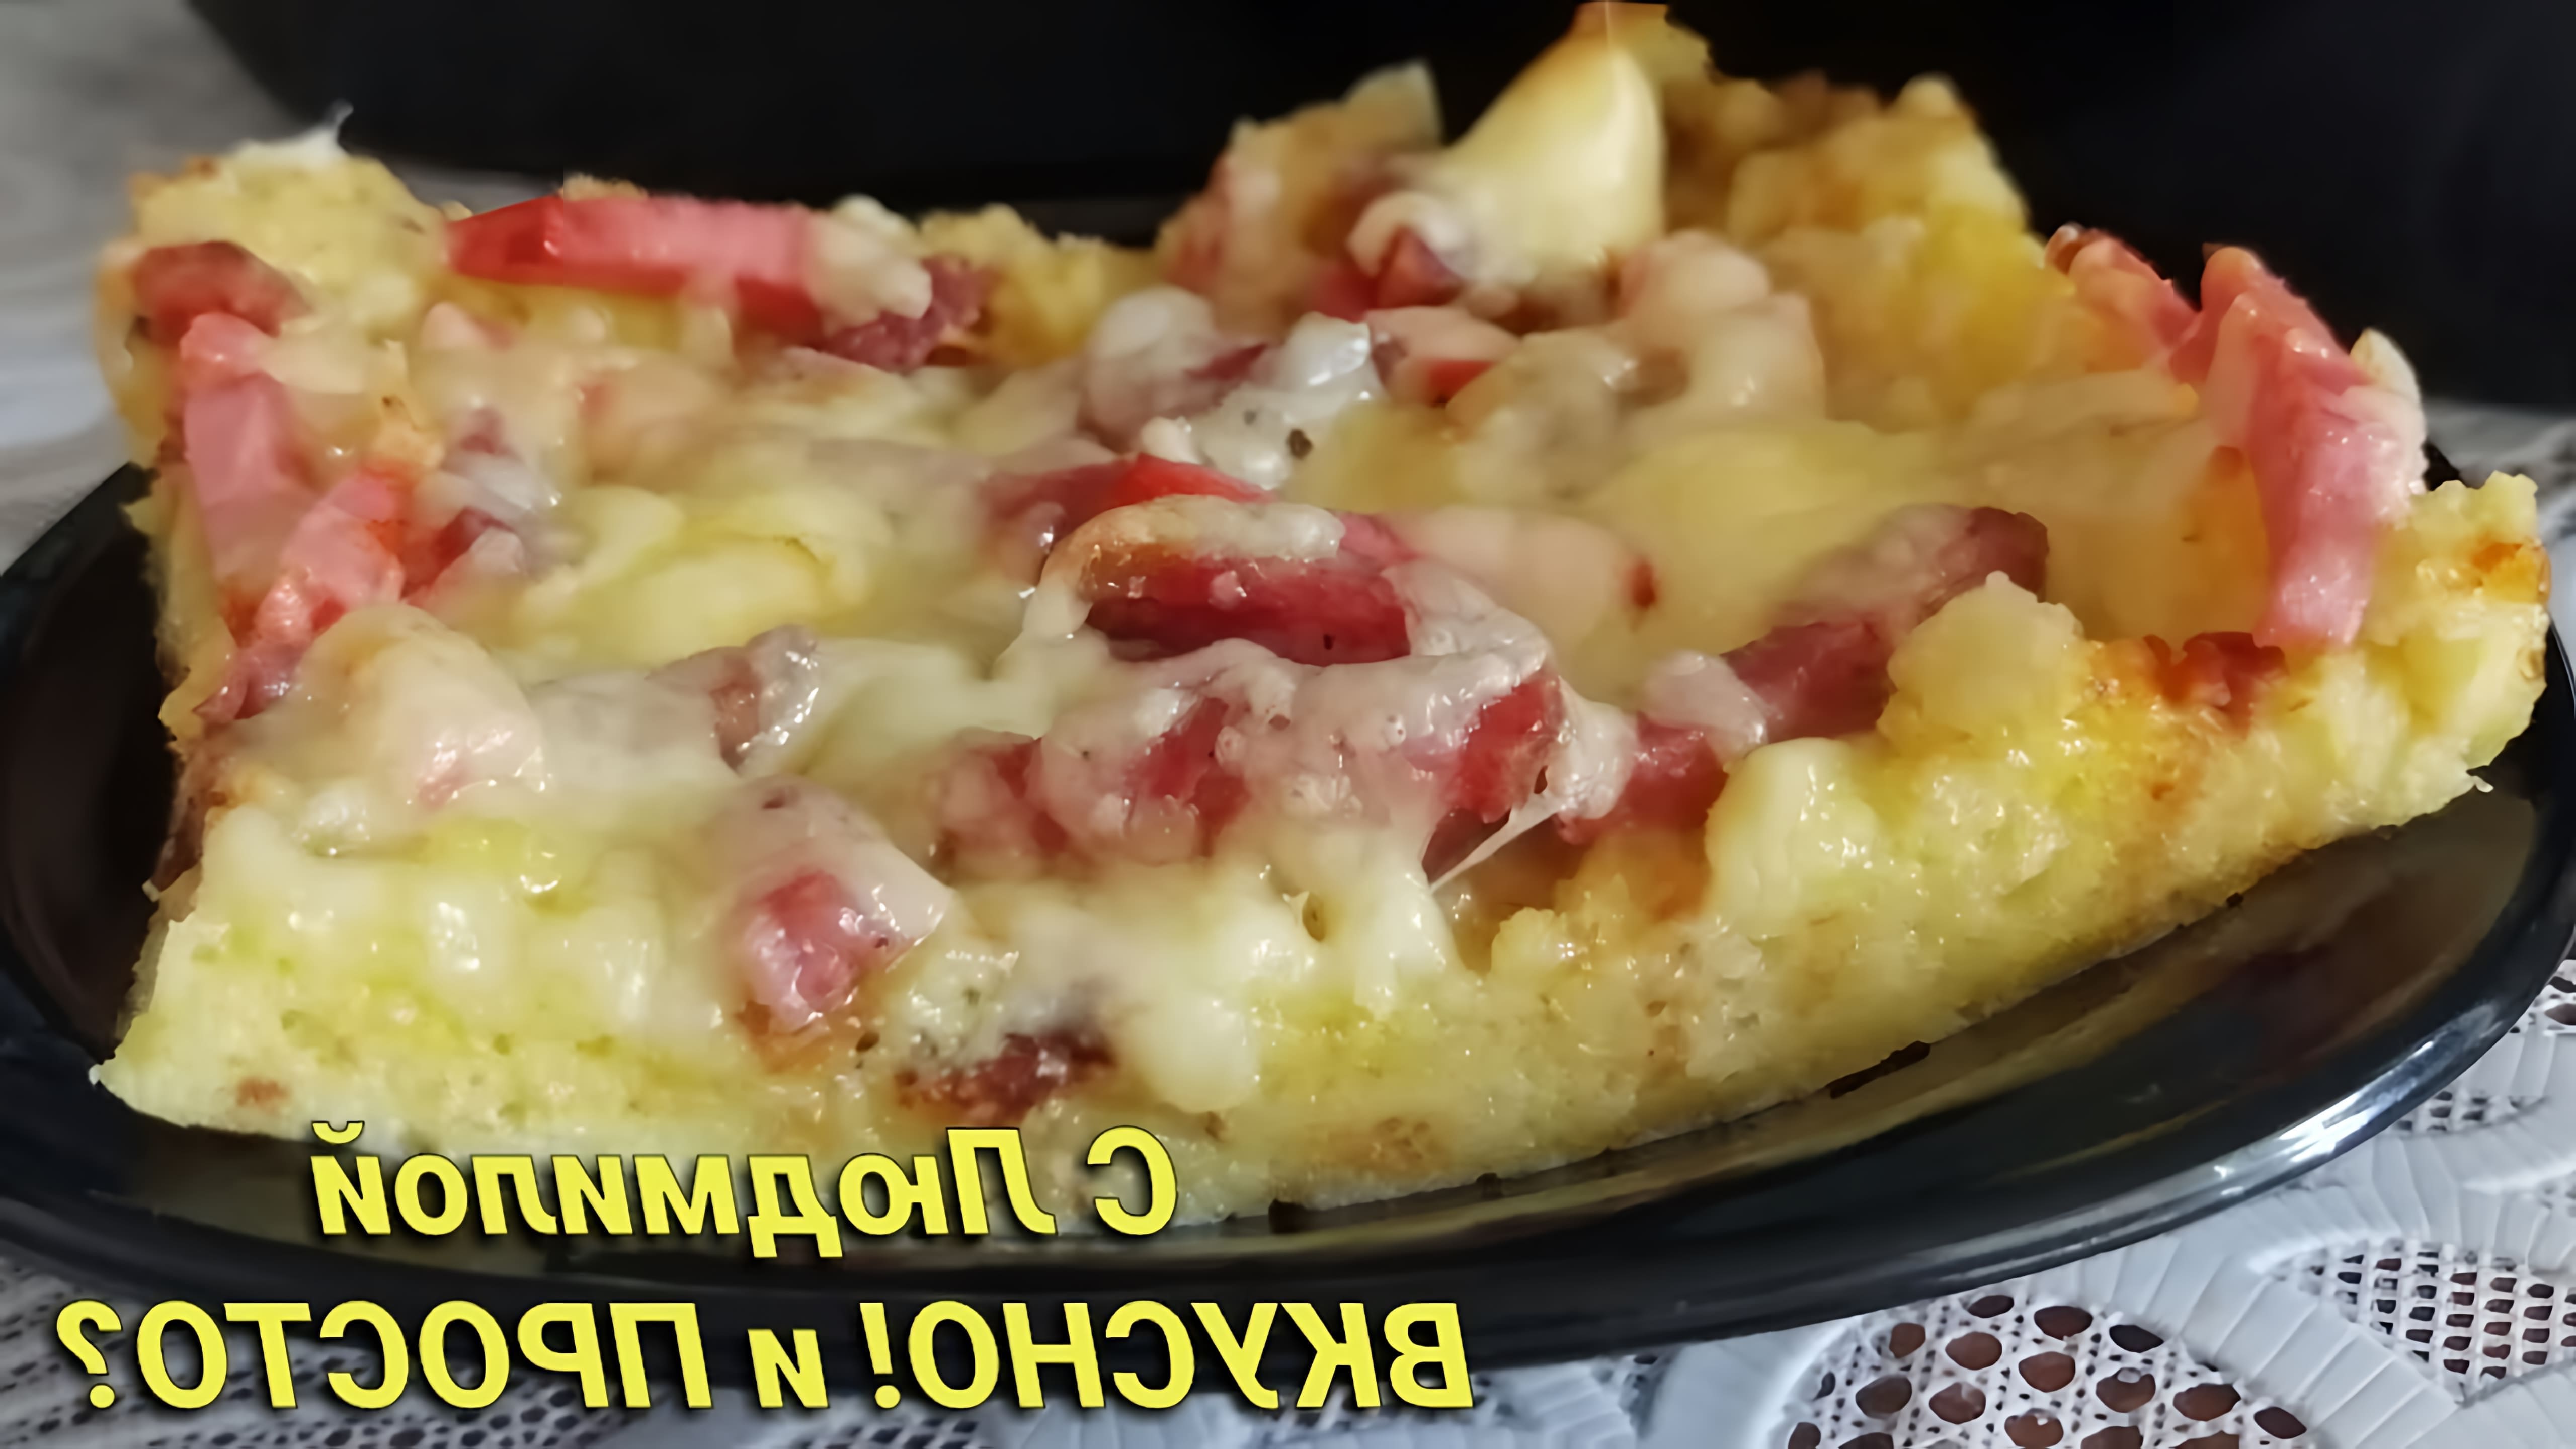 В этом видео демонстрируется быстрый и простой рецепт пиццы из черствого хлеба или батона